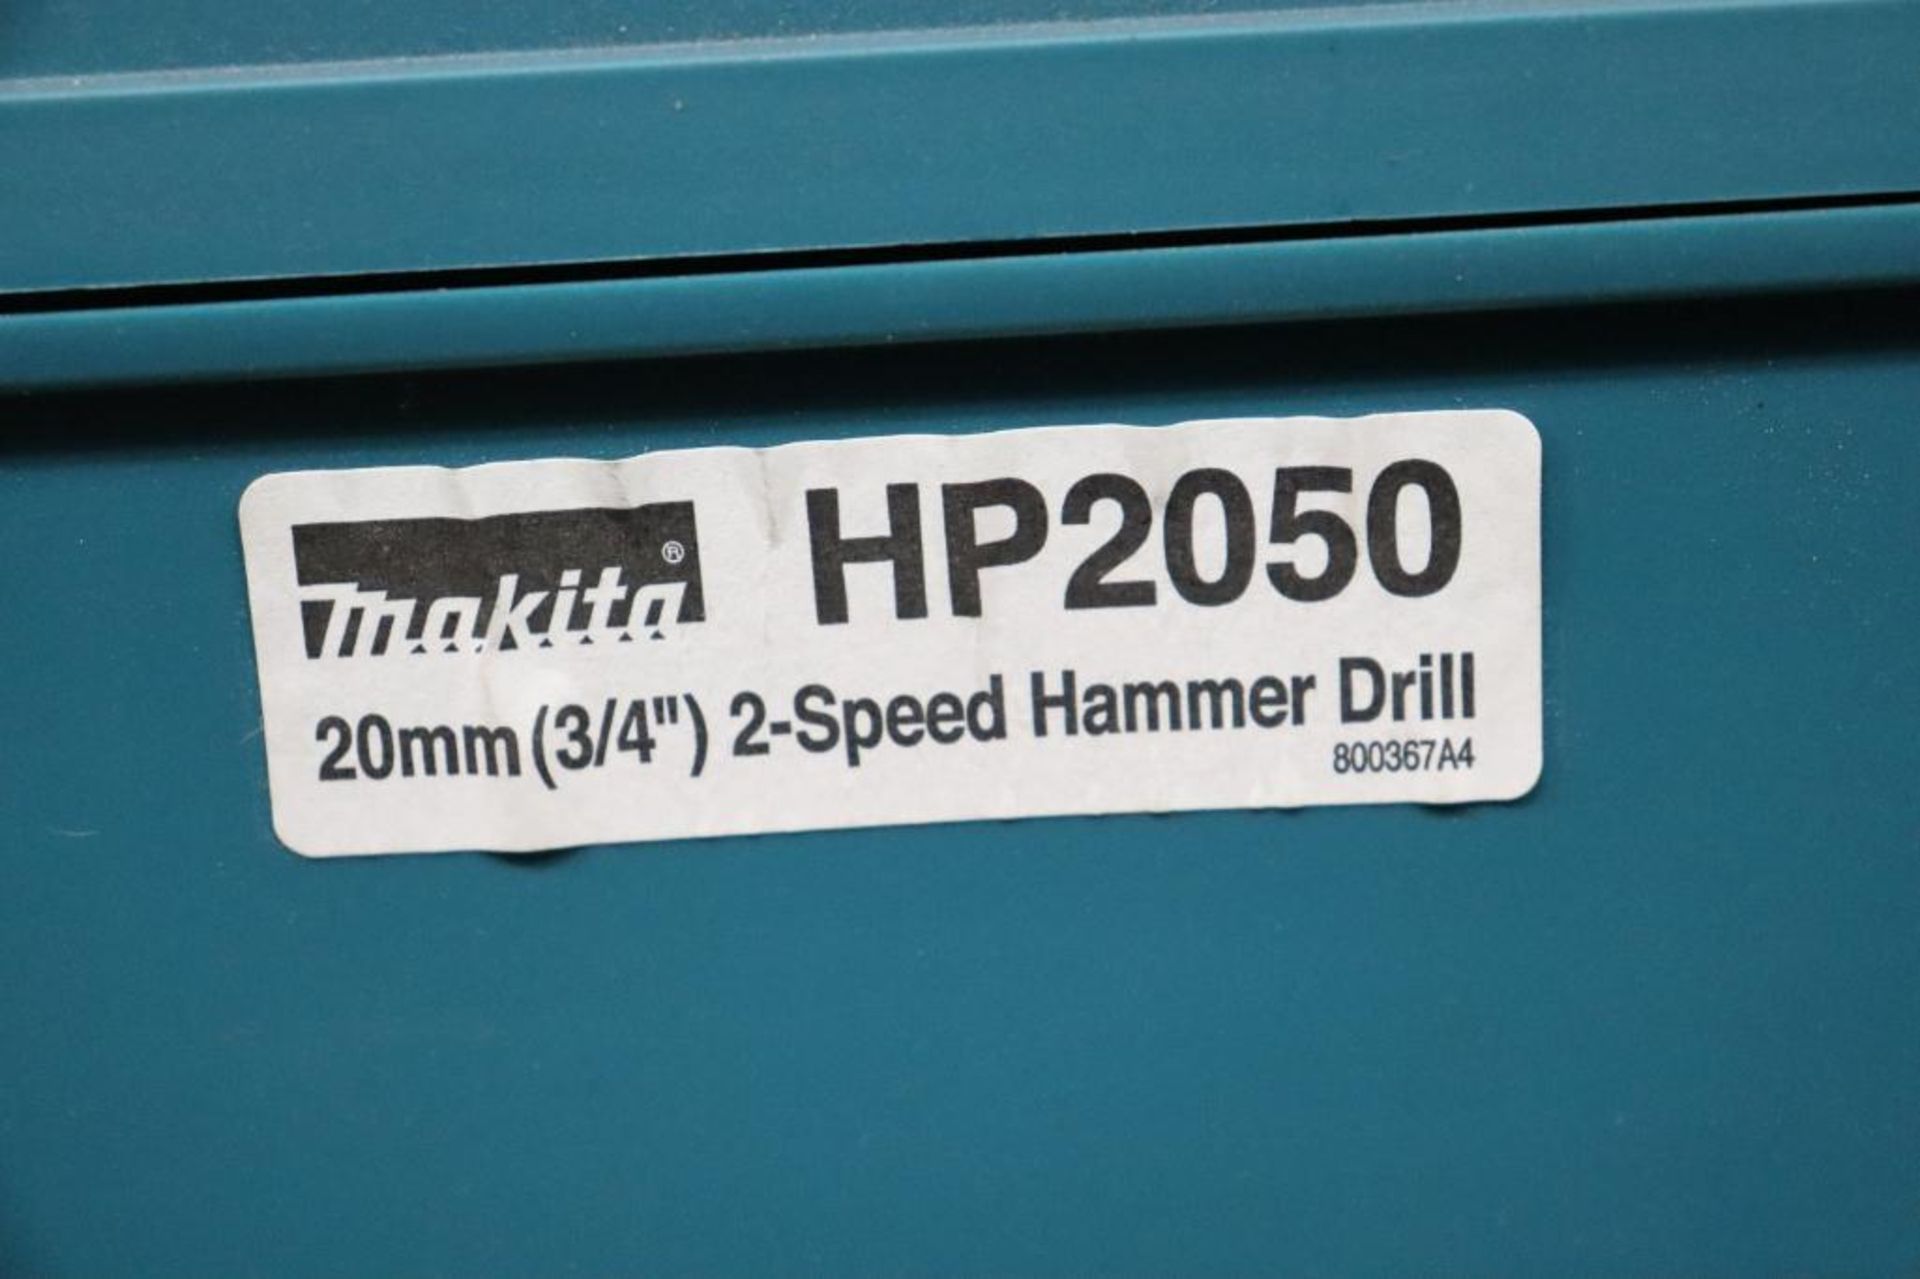 Makita HP2050 hammer drill - Image 3 of 4